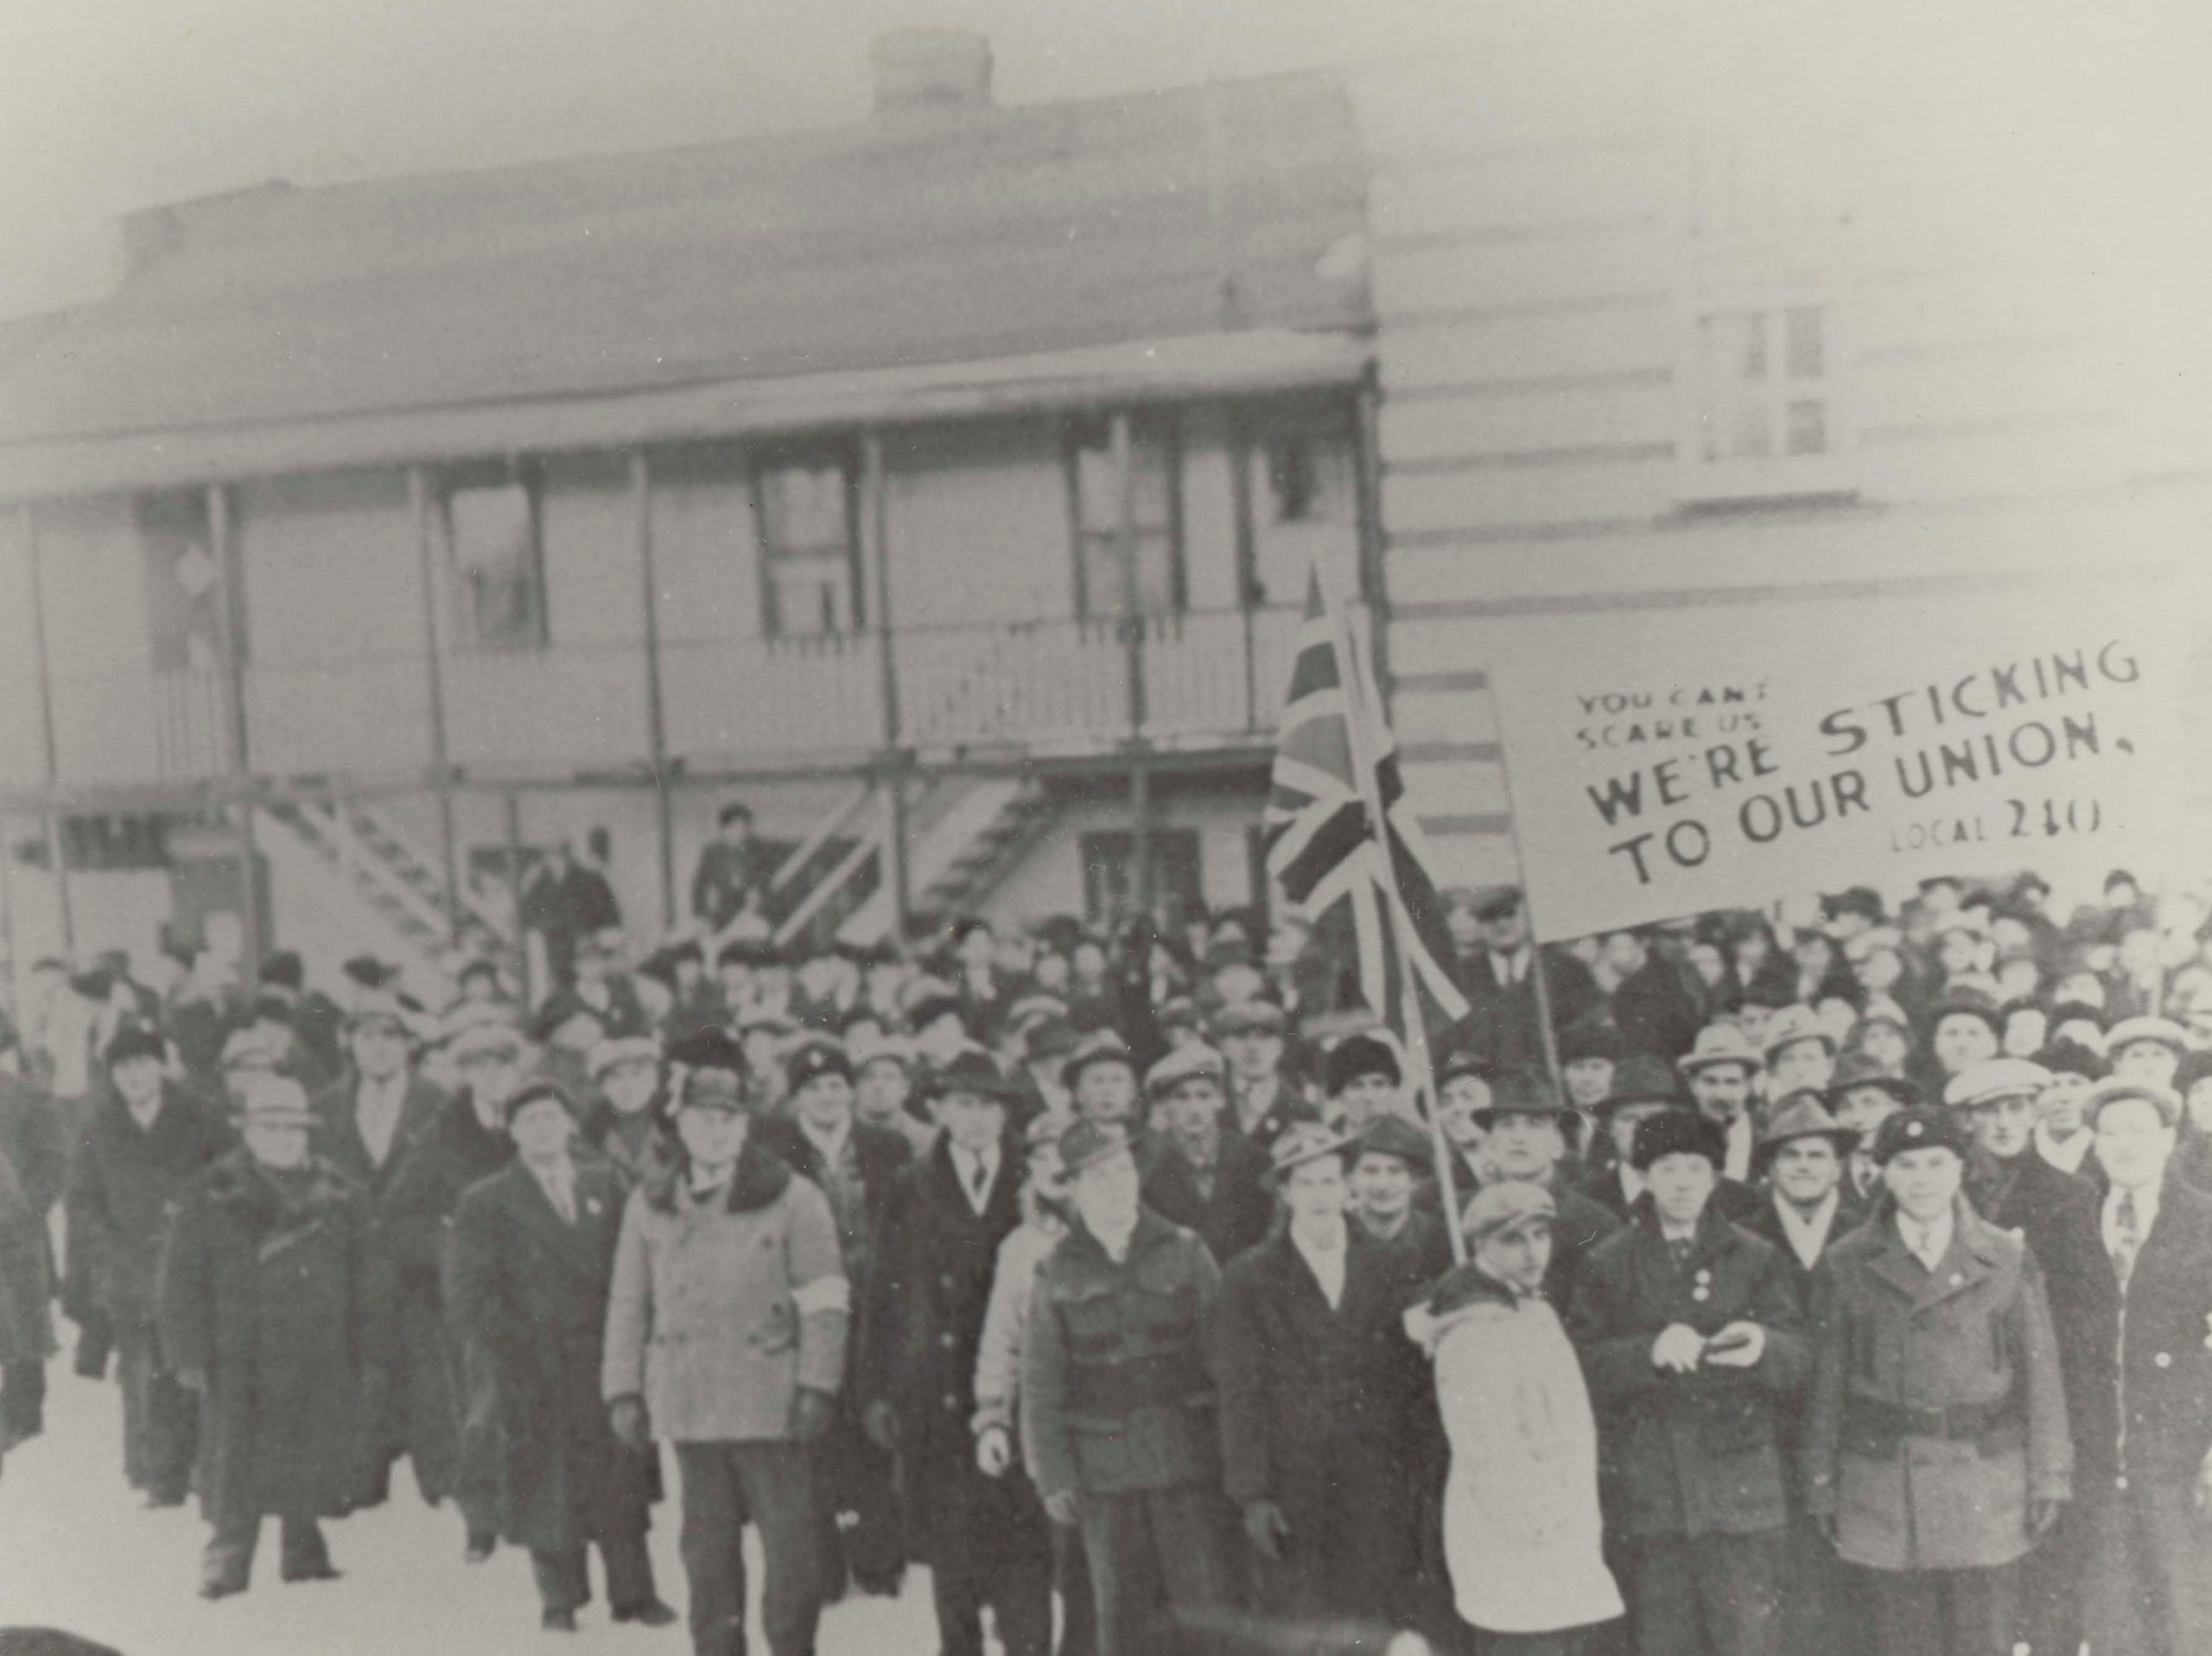 Photographie en noir et blanc d’une grande foule d’hommes vêtus de vêtements chauds se tenant à l’extérieur d’un grand bâtiment en hiver, tenant un drapeau britannique et une pancarte pro-syndicat.